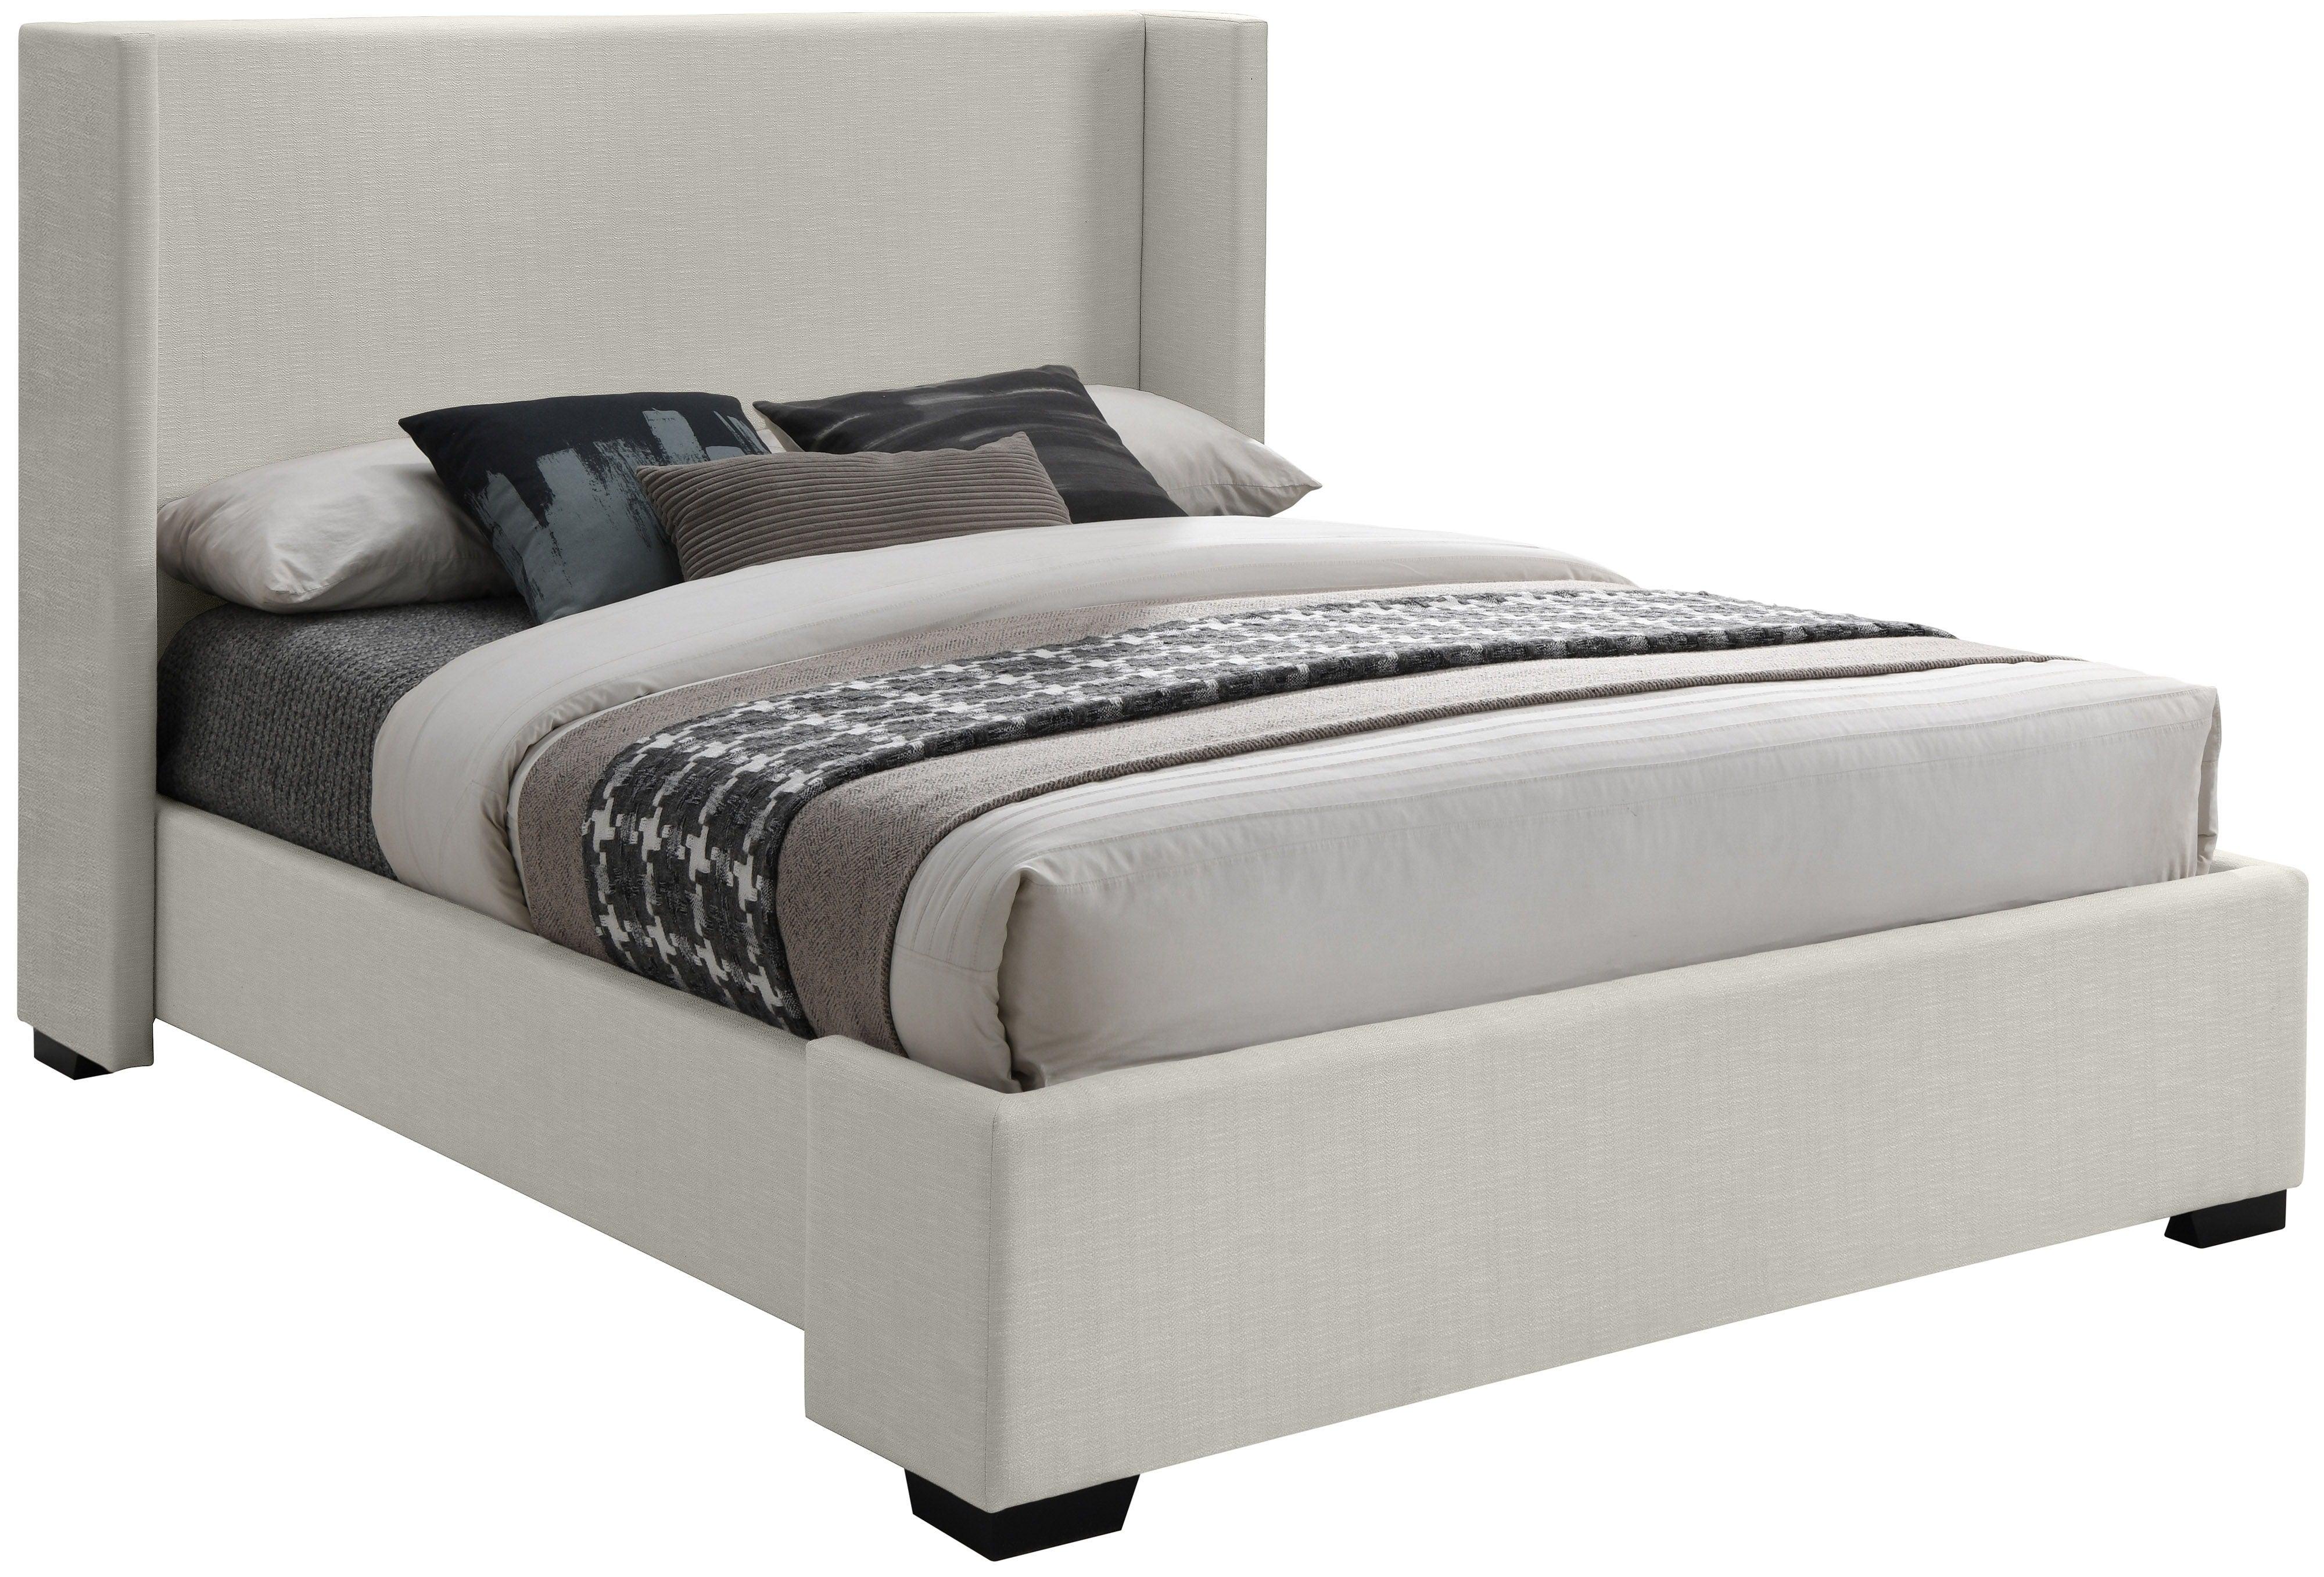 Meridian Furniture - Oxford - Bed - 5th Avenue Furniture